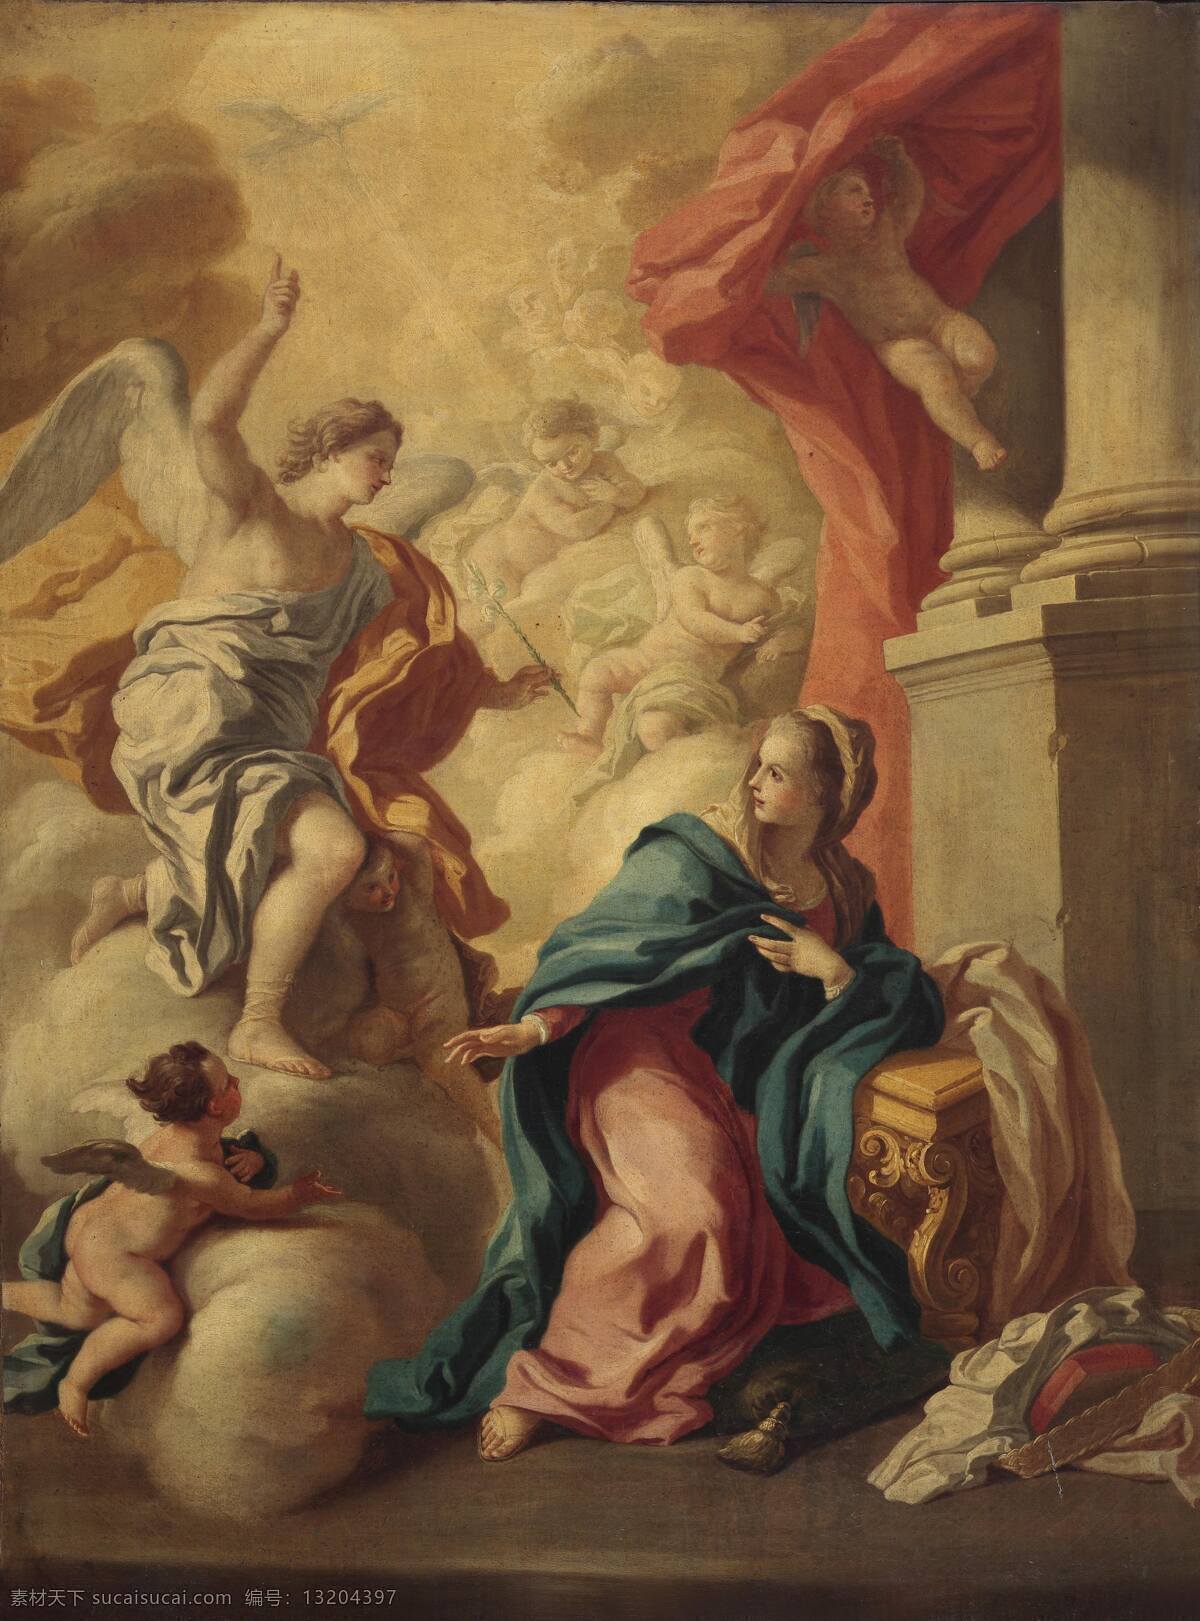 天使报喜 那不勒斯学院 18世纪 圣母玛丽娅 怀孕 圣婴即将到来 天使 预告 古典油画 油画 绘画书法 文化艺术